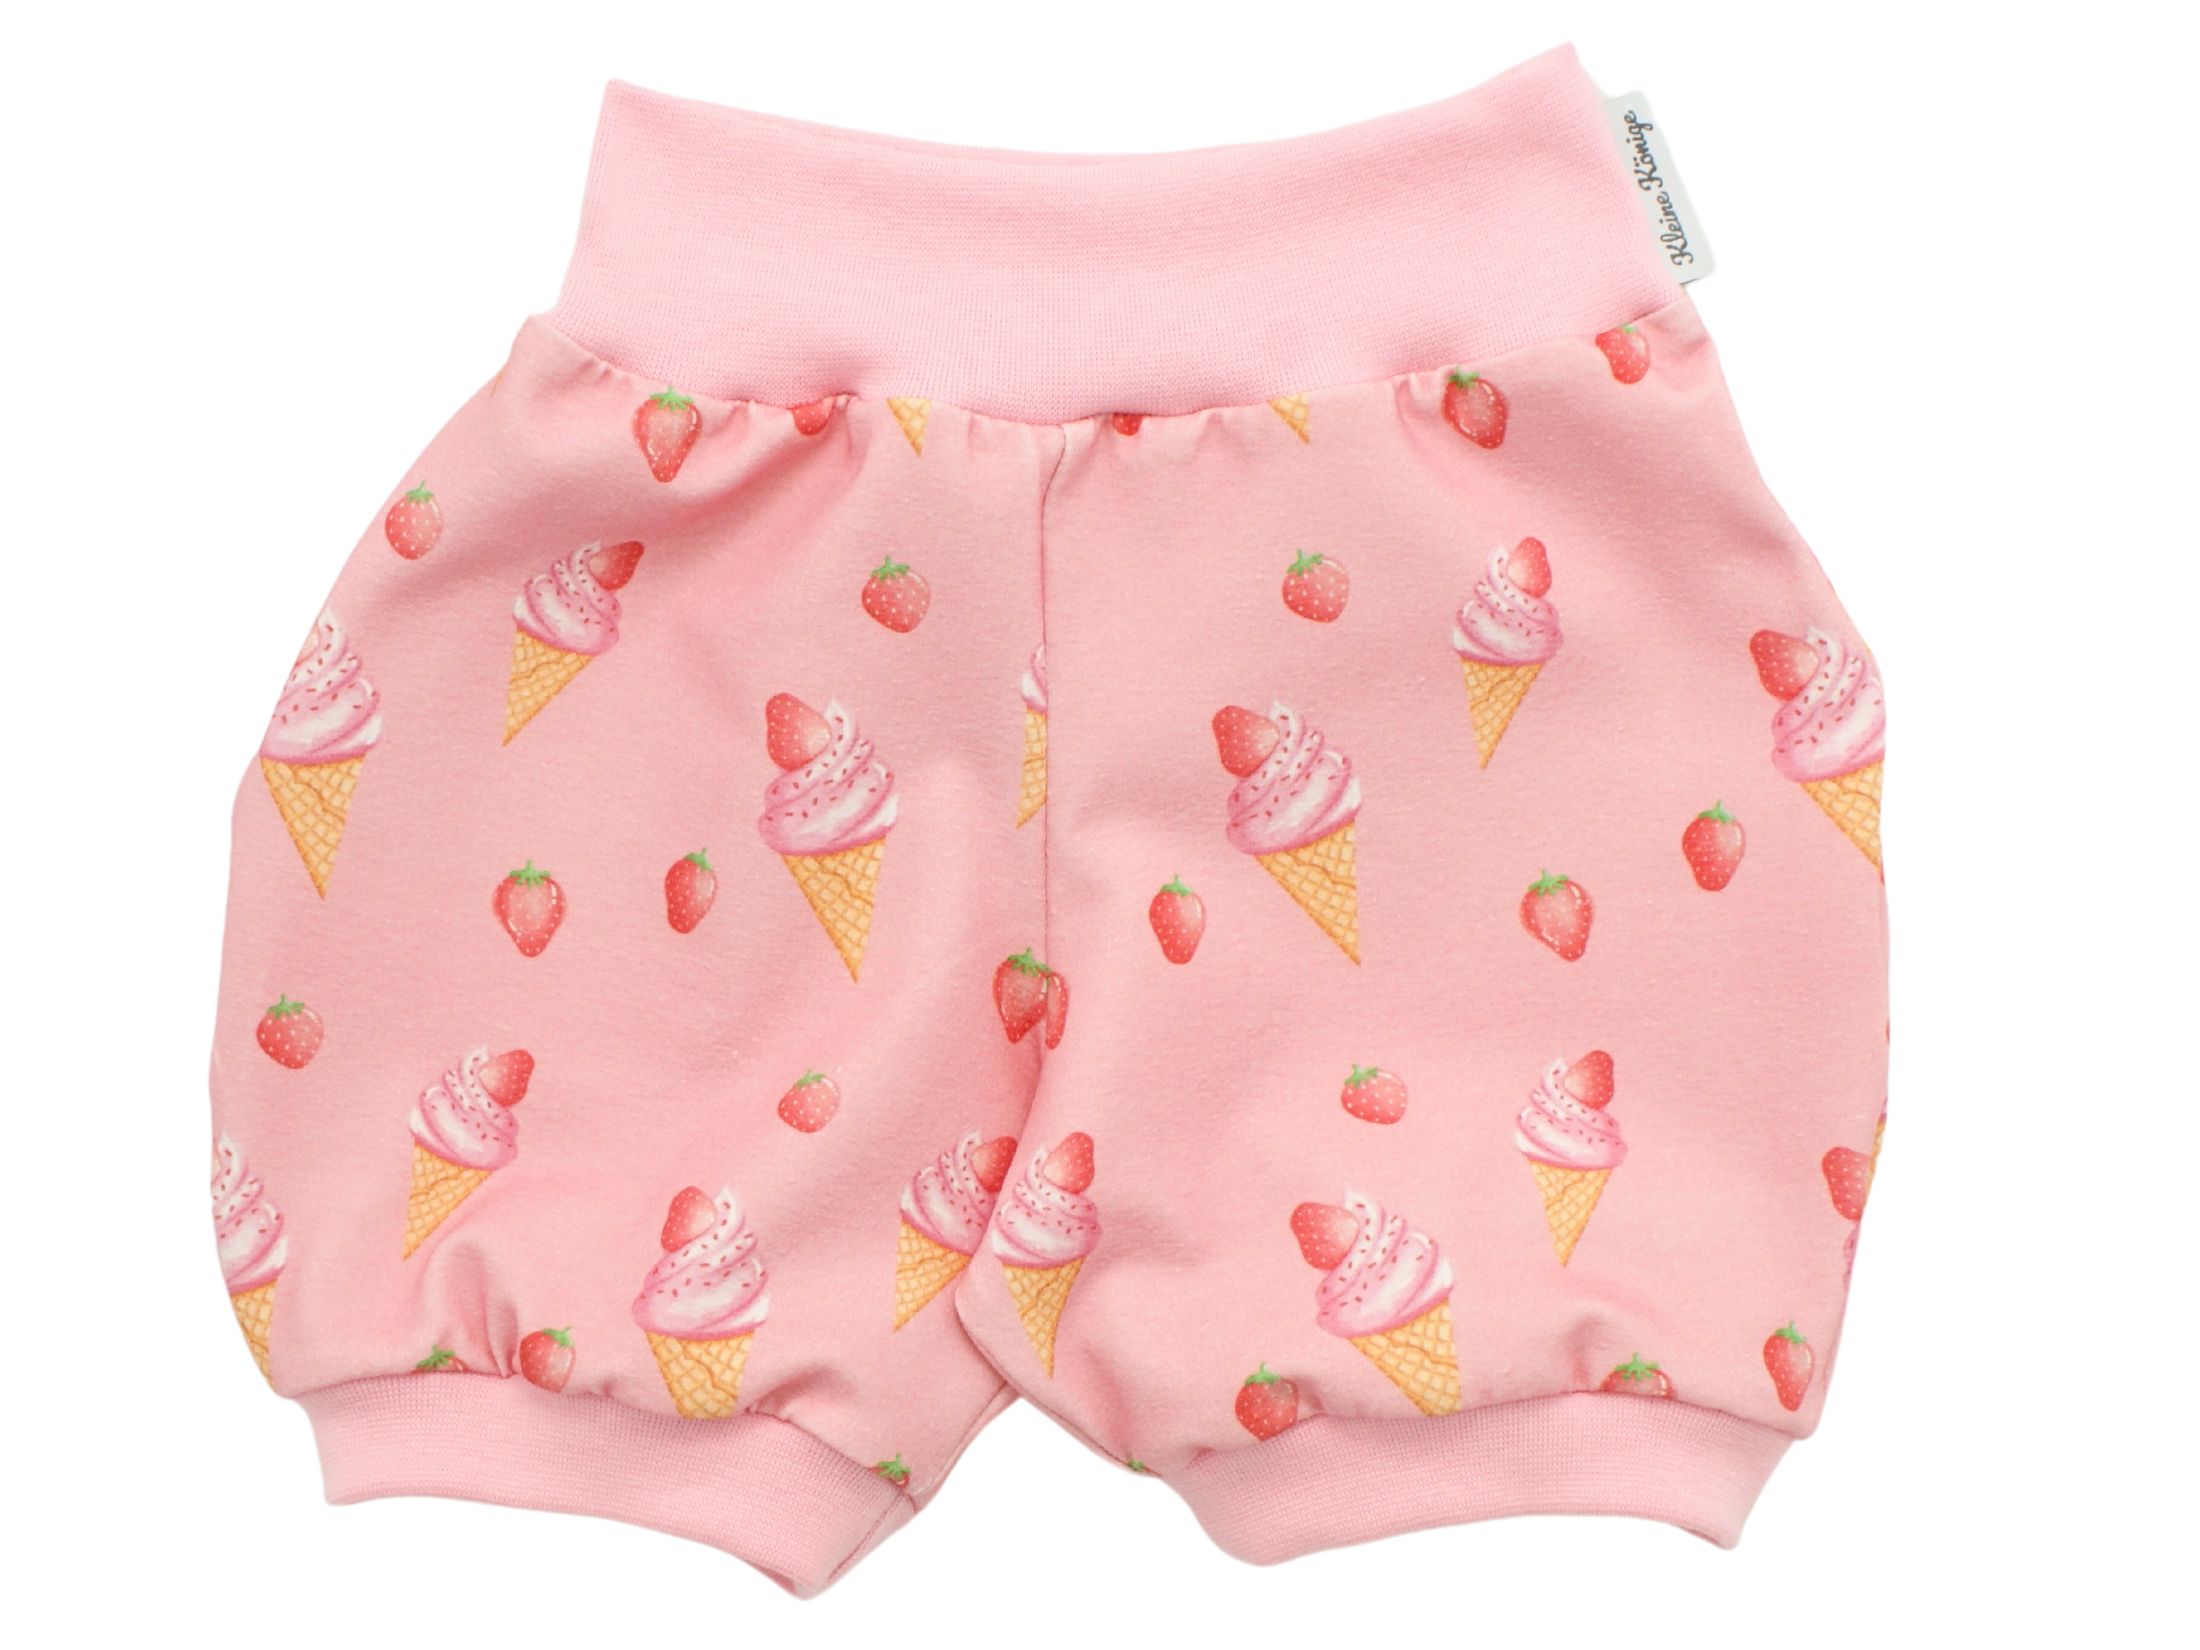 Kinder Sommer Shorts "Erdbeereis" rosa rot